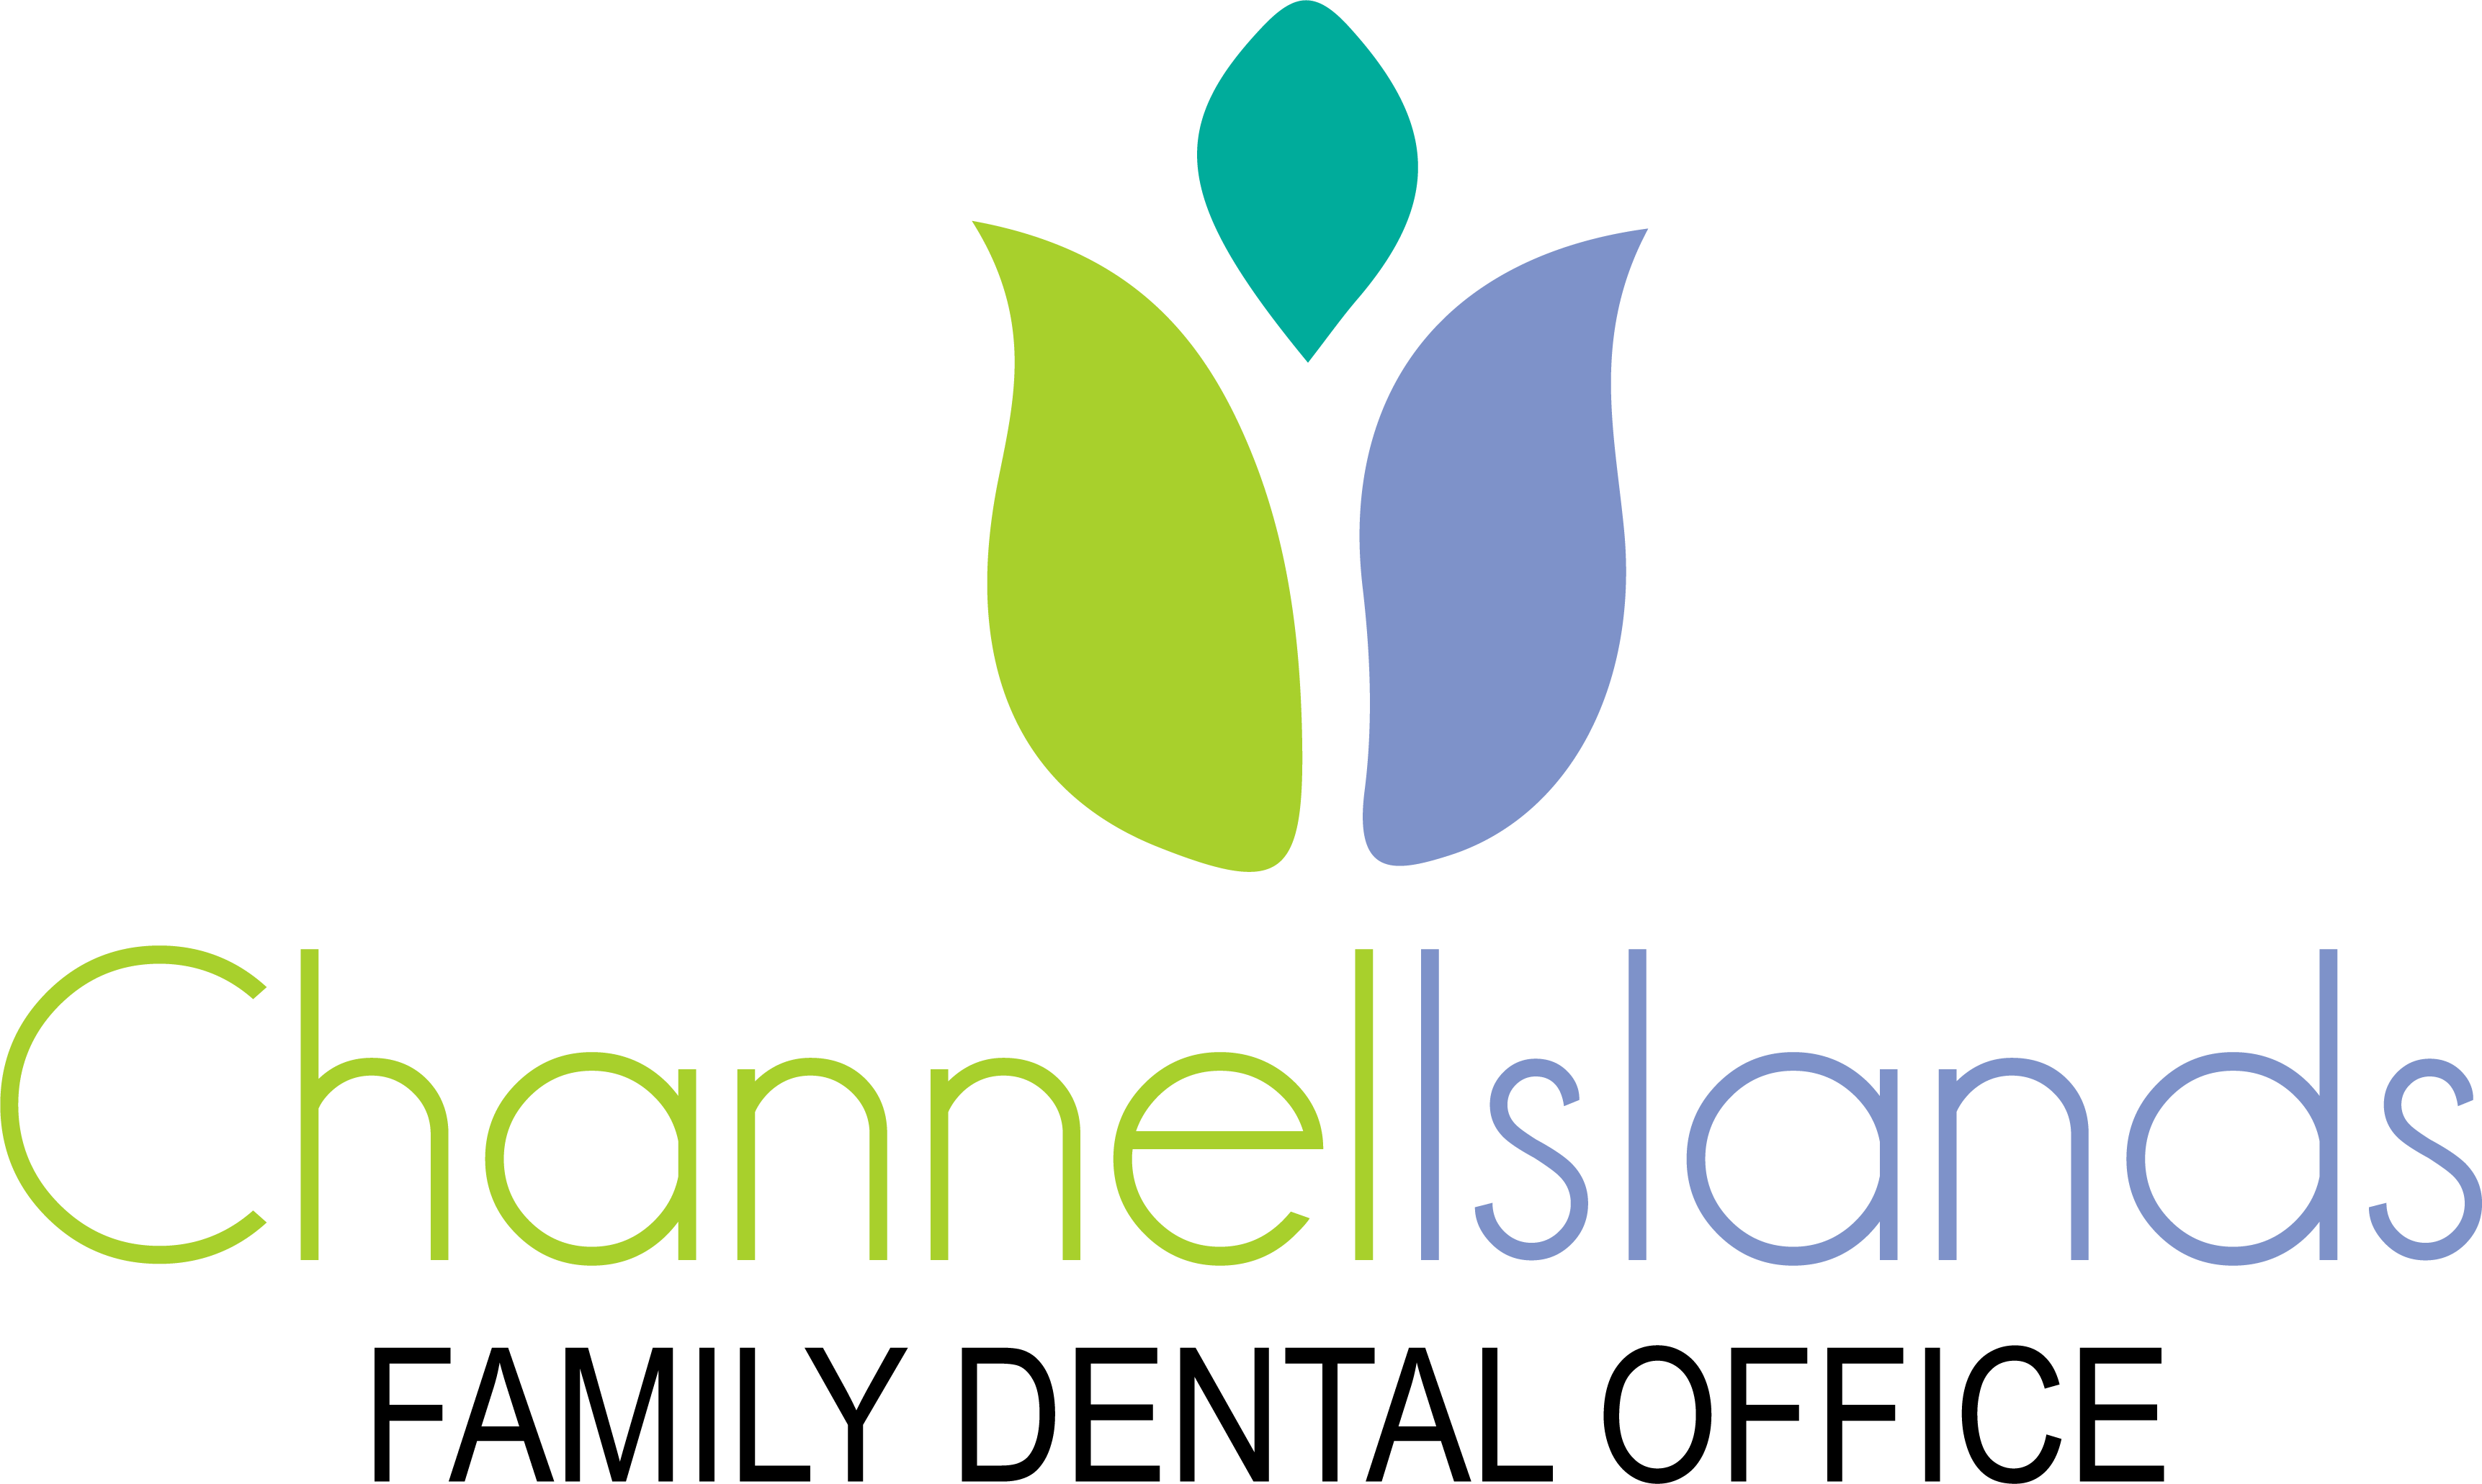 Channel Islands Family Dental Office logo